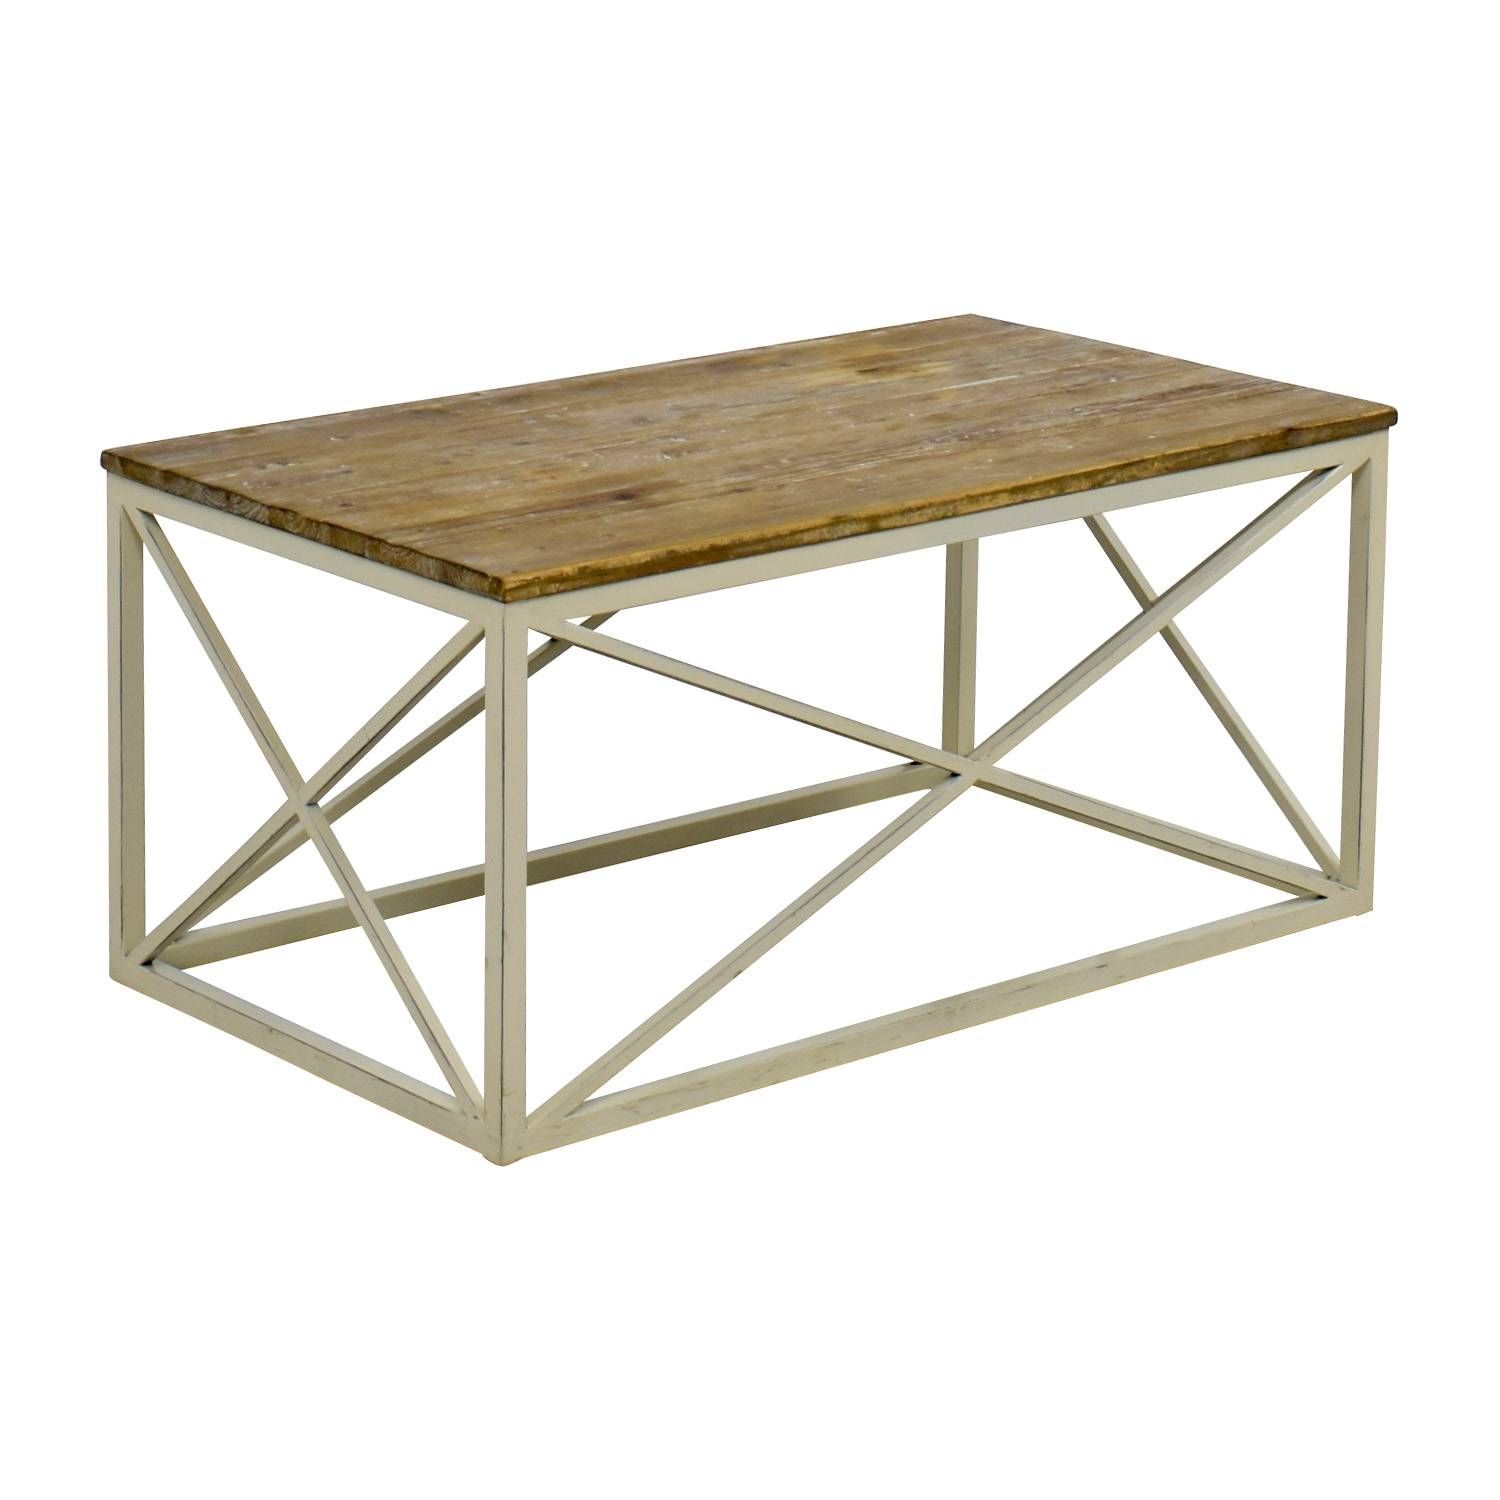 54% Off – Wayfair Wayfair Wooden And Metal Coffee Table / Tables In Metal Coffee Tables (View 30 of 30)